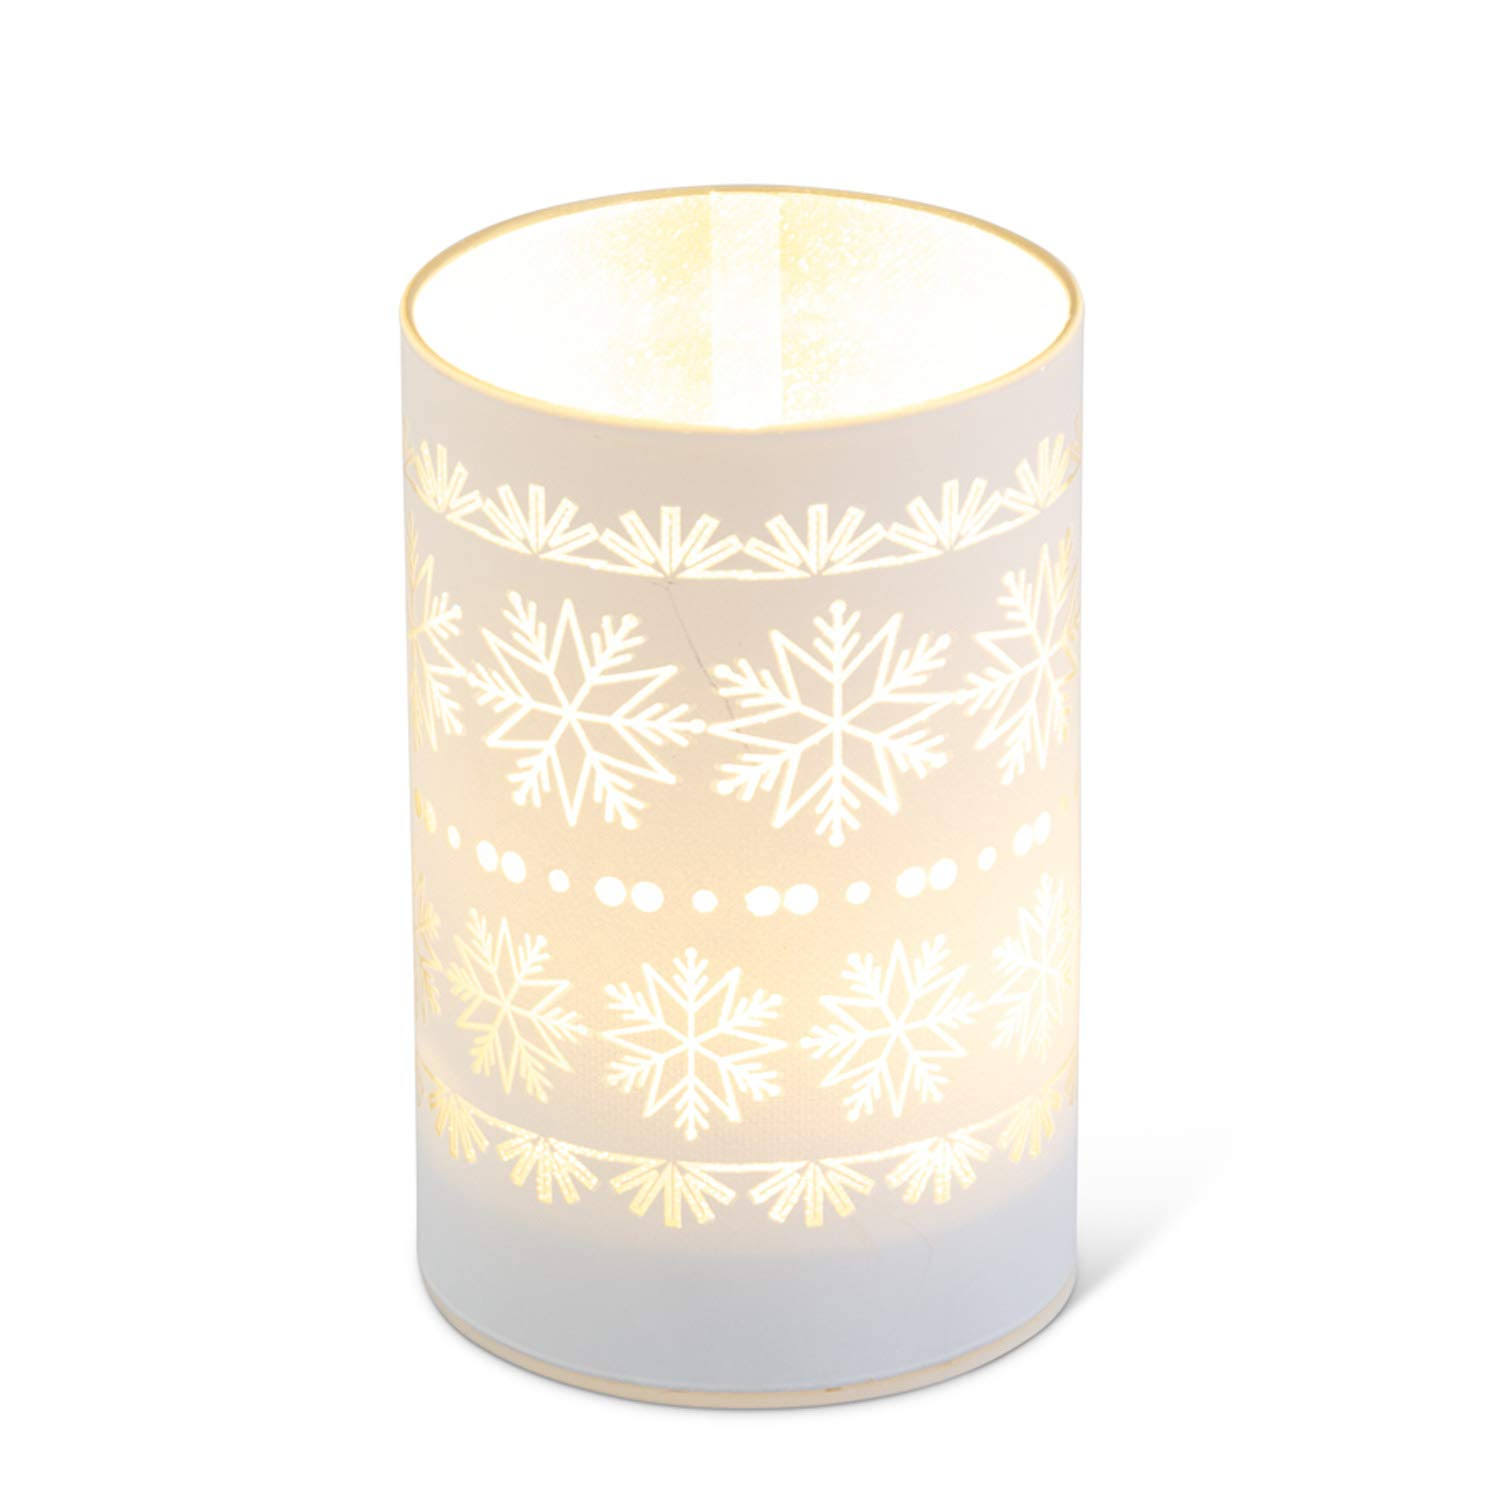 Snowflake Design White LED Glass Candle Votives, 3 Sizes Medium